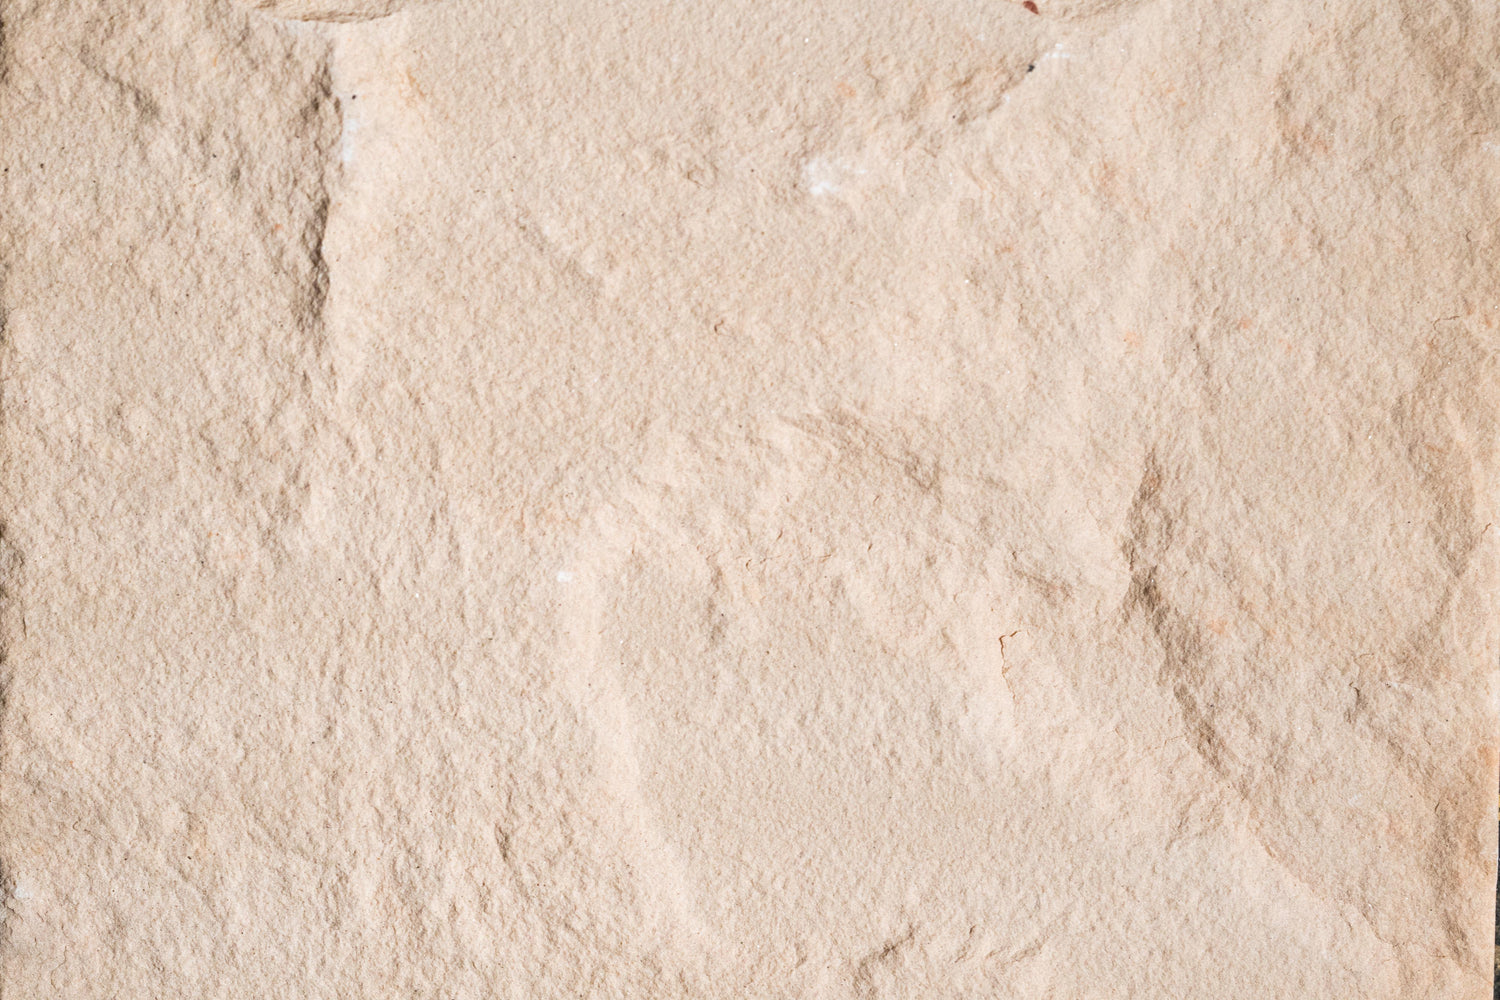 Peach Blossom Sandstone Tile - Natural Cleft Face, Gauged Back